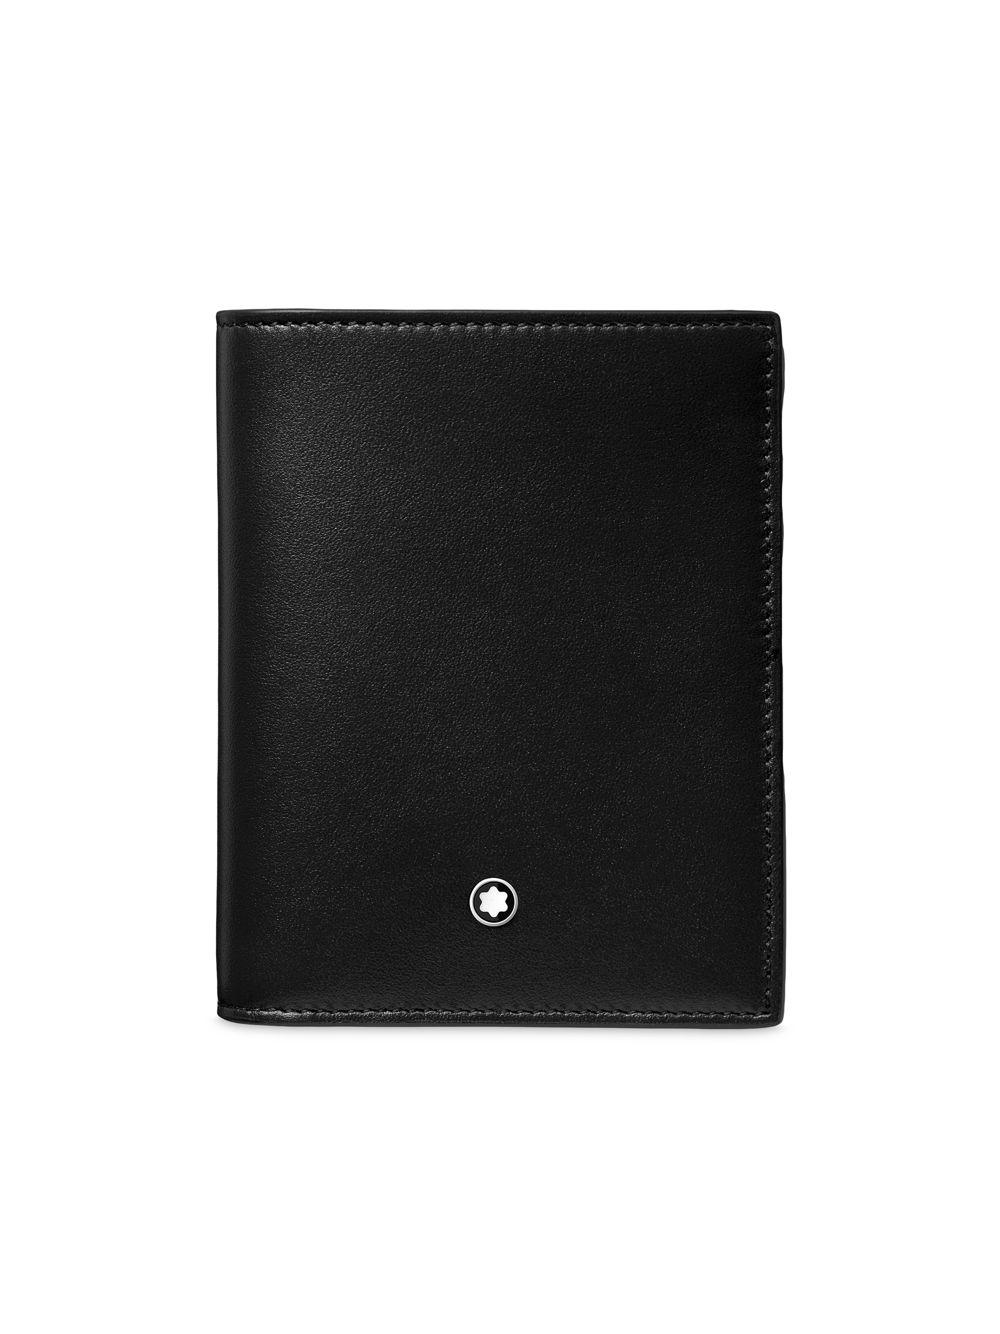 Компактный бумажник Meisterstück Montblanc, черный портмоне обложки montblanc 00124190 бумажник